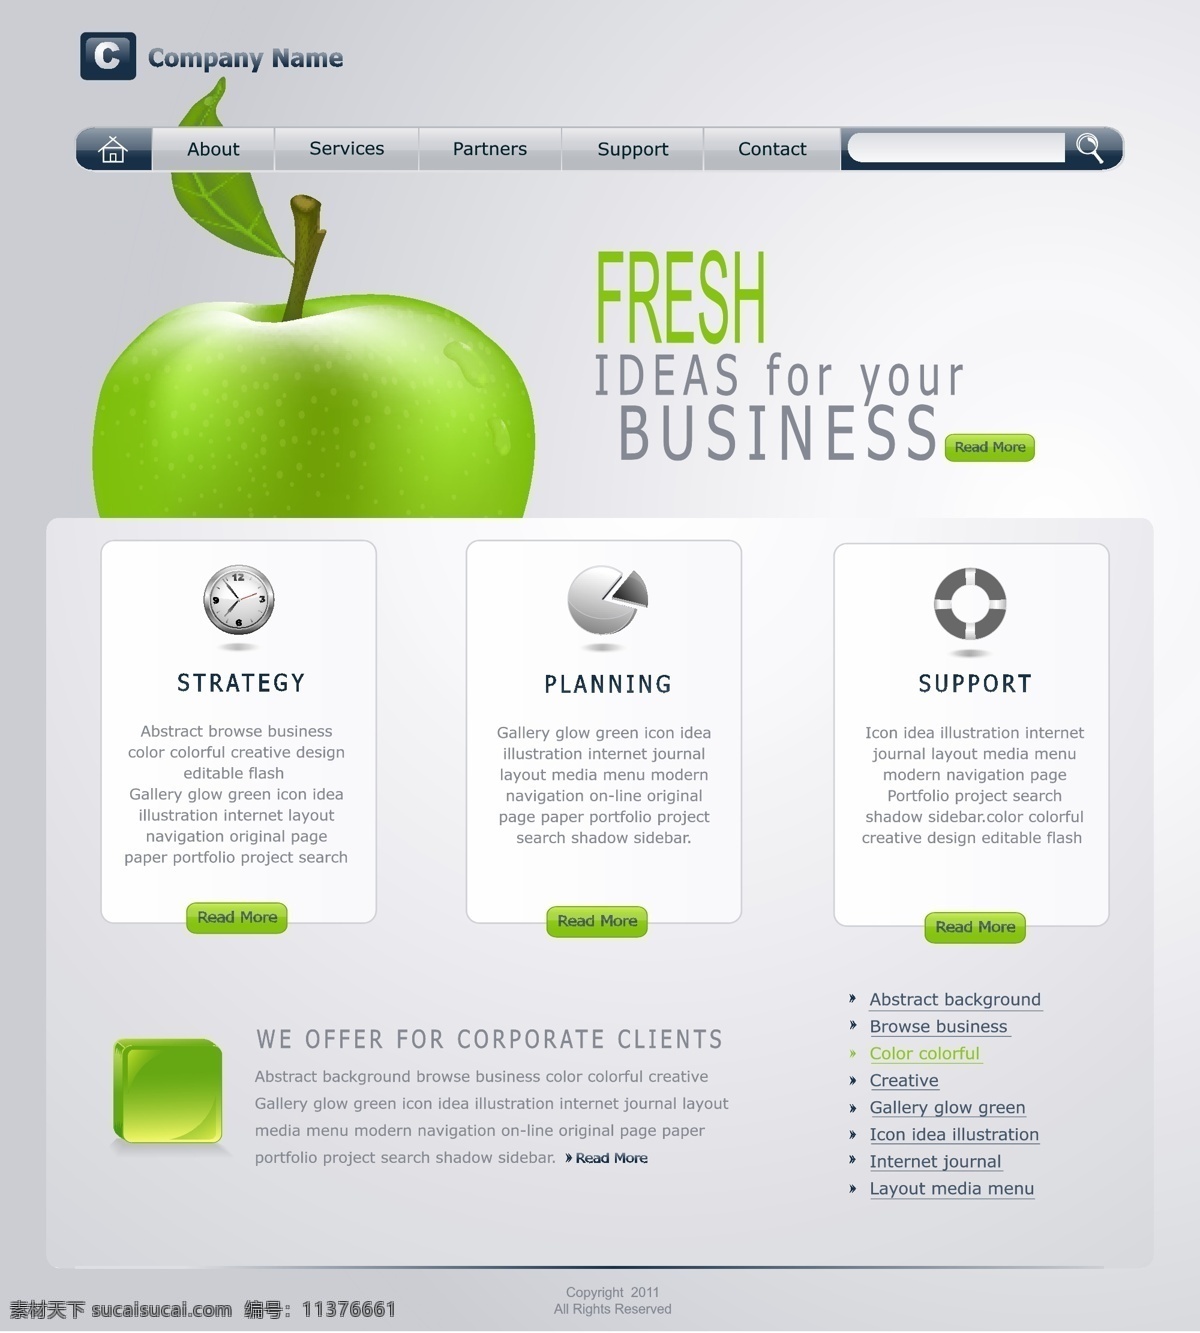 清新网站模板 网站设计 网站模板 网站界面设计 简洁 简约时尚 网页设计 网页设计模板 苹果 绿色清新 其他模板 矢量素材 白色